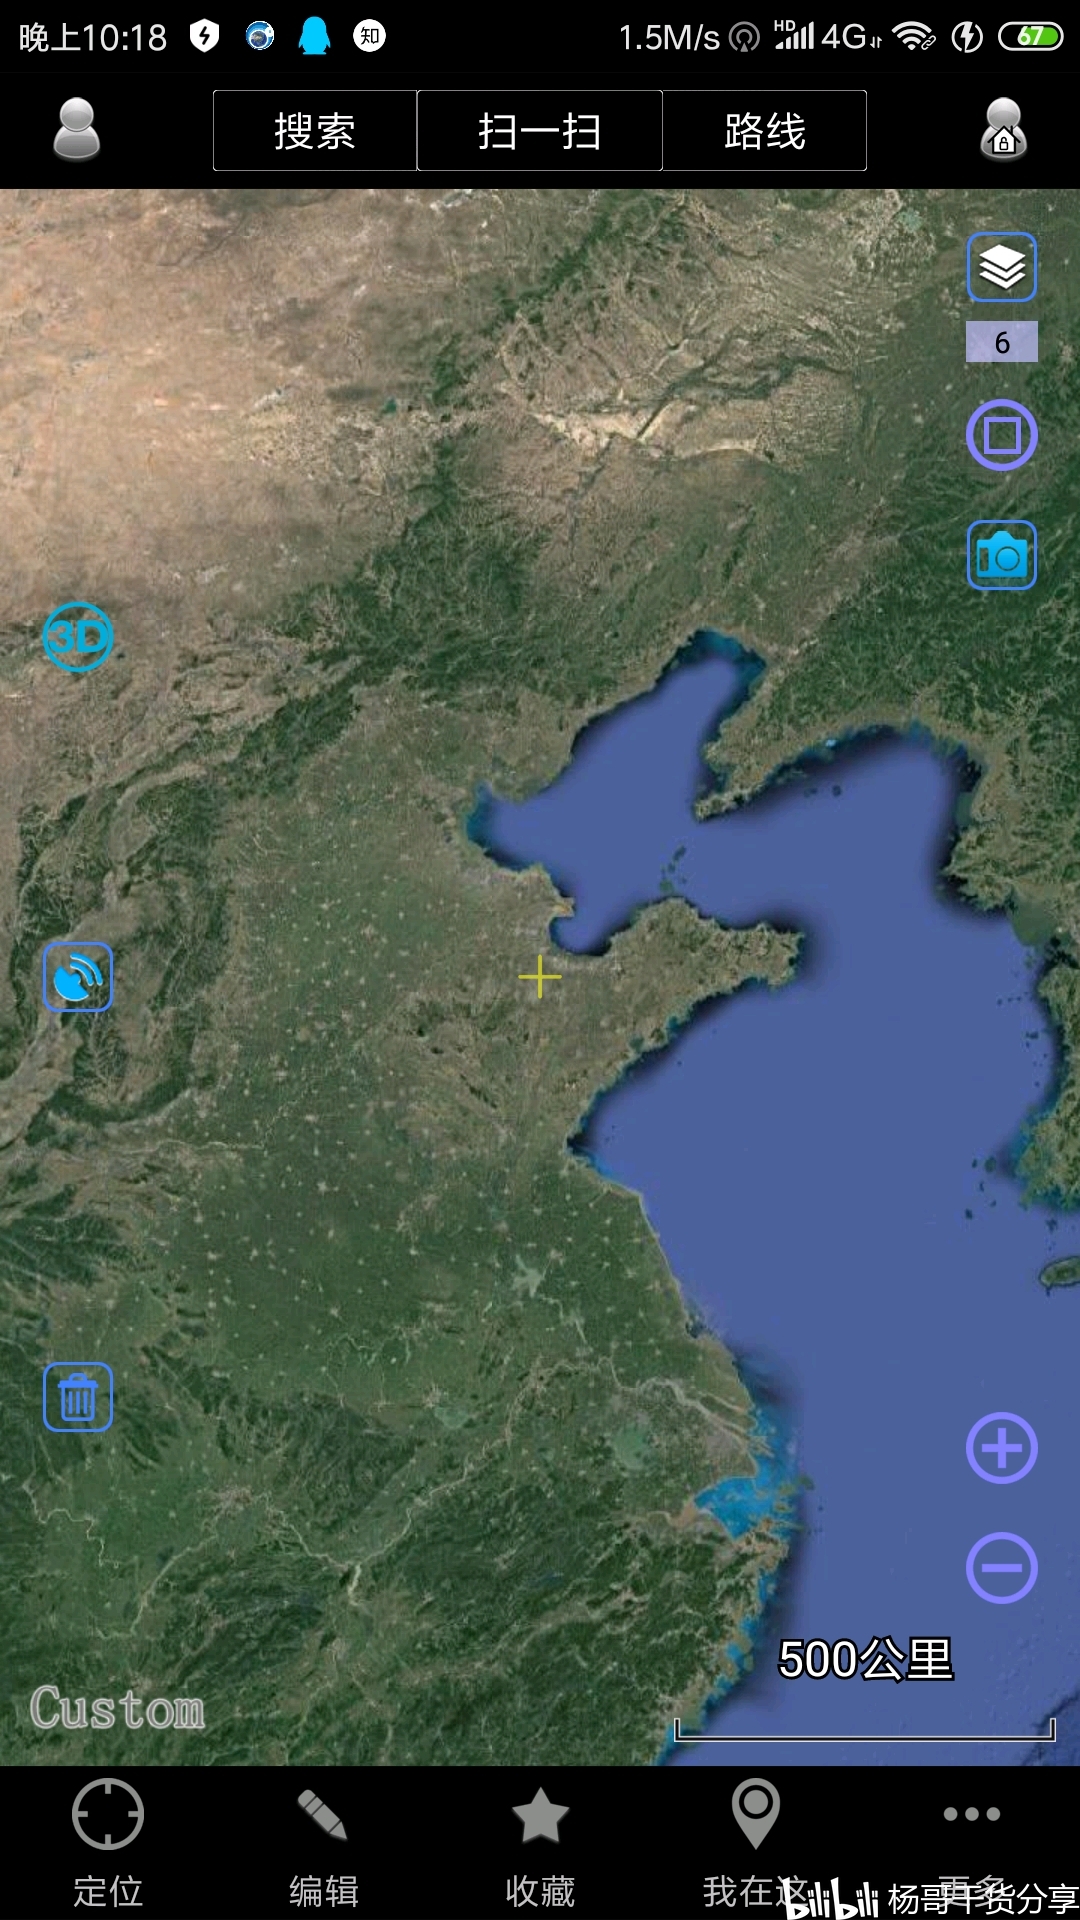 【GIS教程】在谷歌地图中快速导出区域地形图_google地球怎么导出地图-CSDN博客